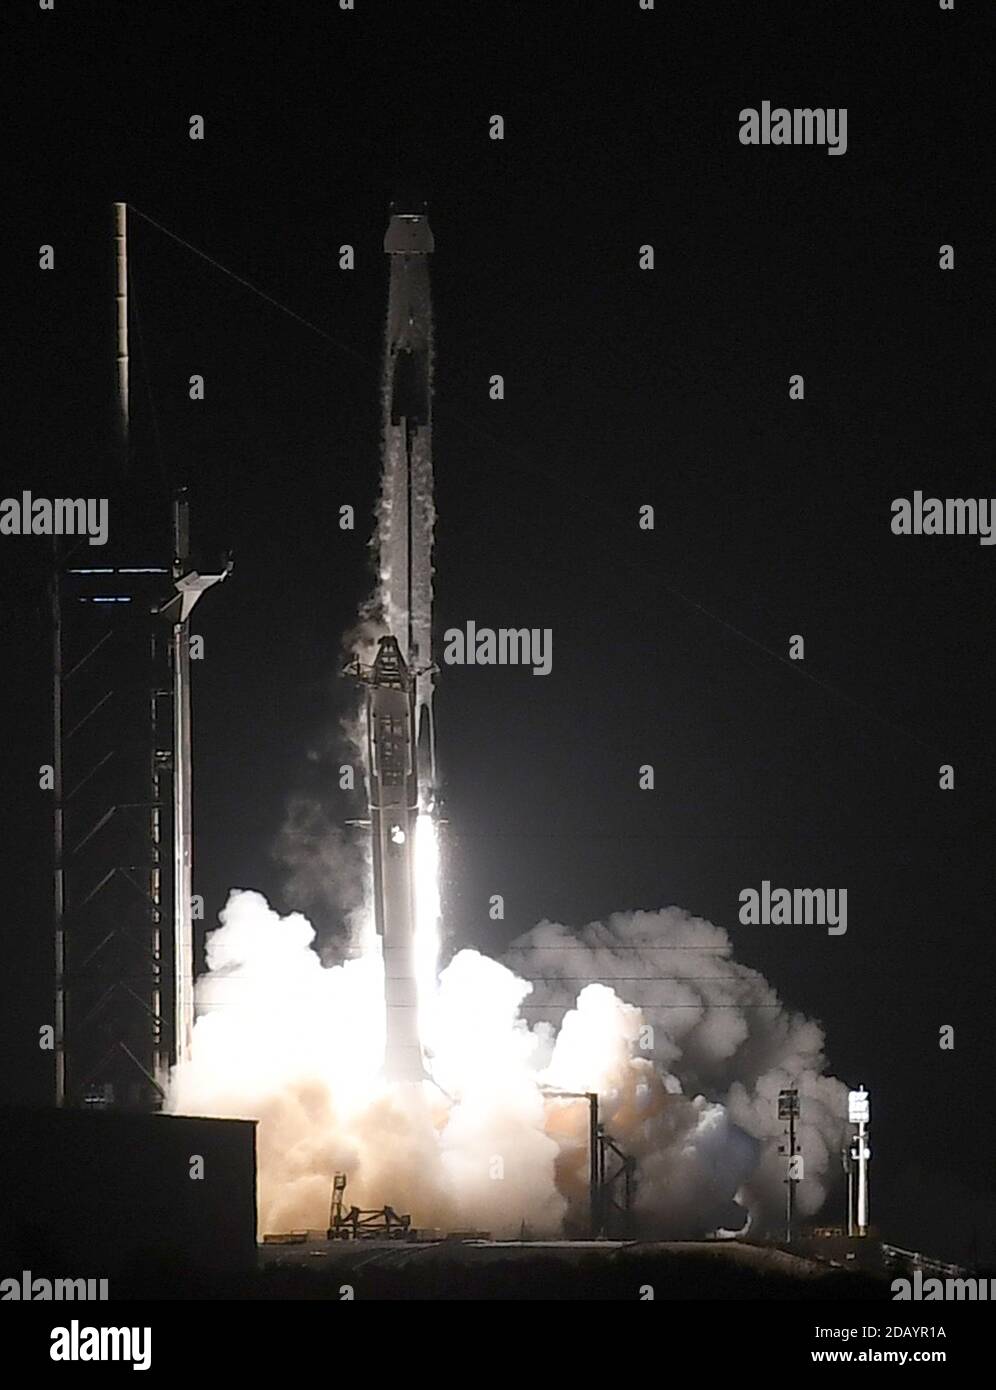 15 de noviembre de 2020 - Cabo Cañaveral, Florida, Estados Unidos - un cohete SpaceX Falcon 9 que transporta la nave espacial Crew Dragon lanza desde PAD 39A en el Centro Espacial Kennedy el 15 de noviembre de 2020 en Cabo Cañaveral, Florida. La misión de la tripulación 1 está enviando a una tripulación de cuatro astronautas a la Estación Espacial Internacional. (Paul Hennessy/Alamy) Foto de stock